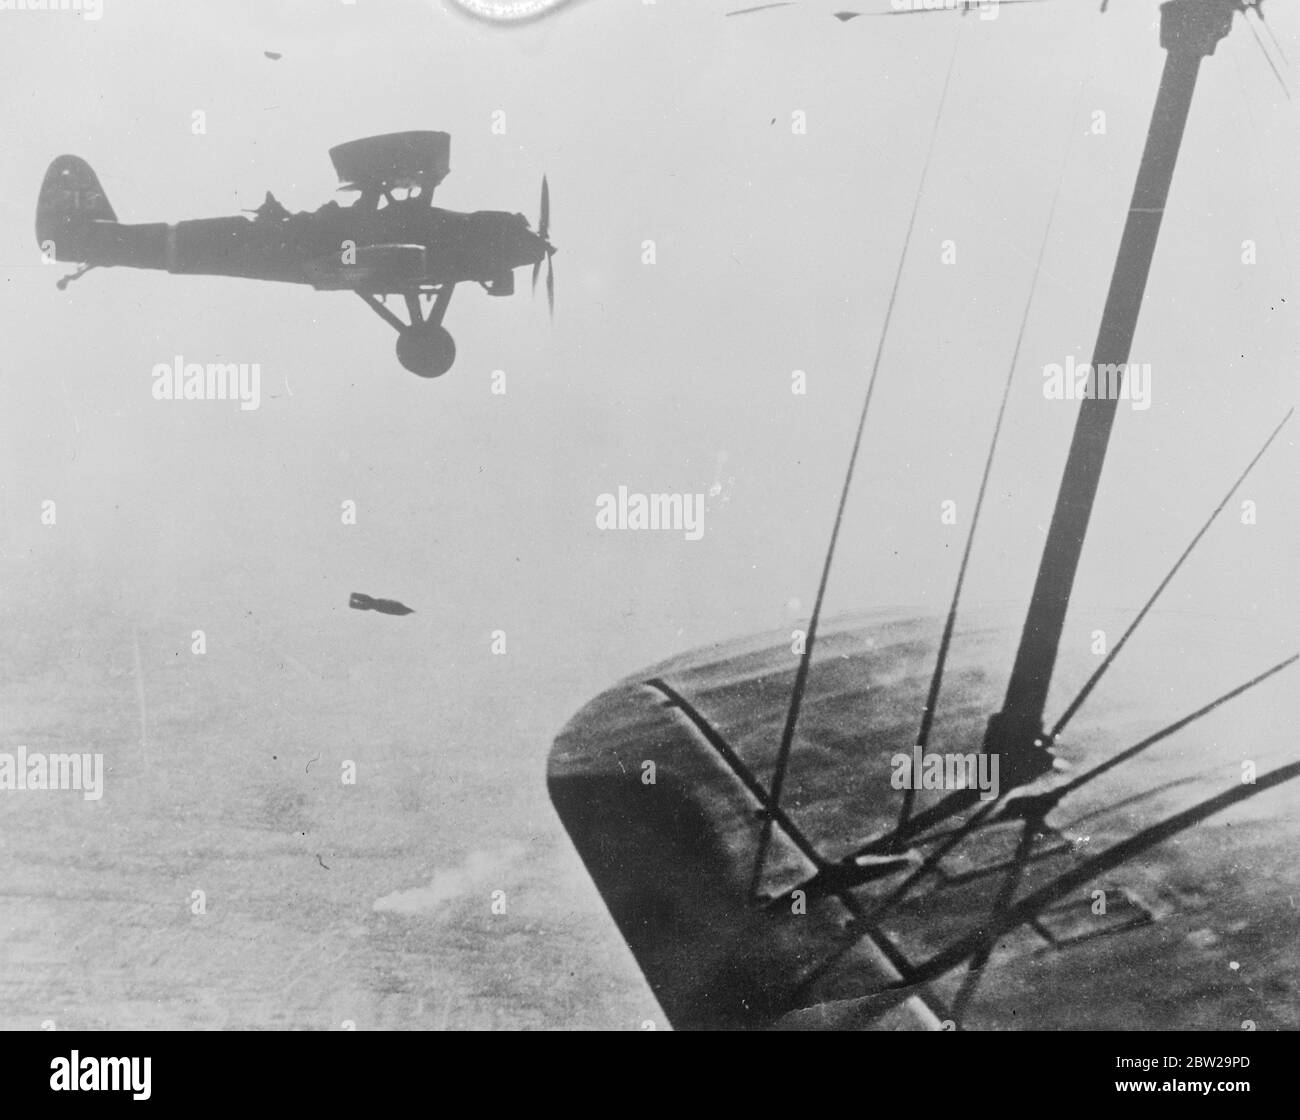 Una bomba giapponese inizia la sua missione mortale. Questa immagine notevole mostra una bomba subito dopo il suo rilascio da Kaga B3YI aereo navale giapponese bombardamento. La telecamera catturò il mortale missile mentre stava annuendo verso il basso verso le linee cinesi vicino a Shanghai. 22 novembre 1937 Foto Stock